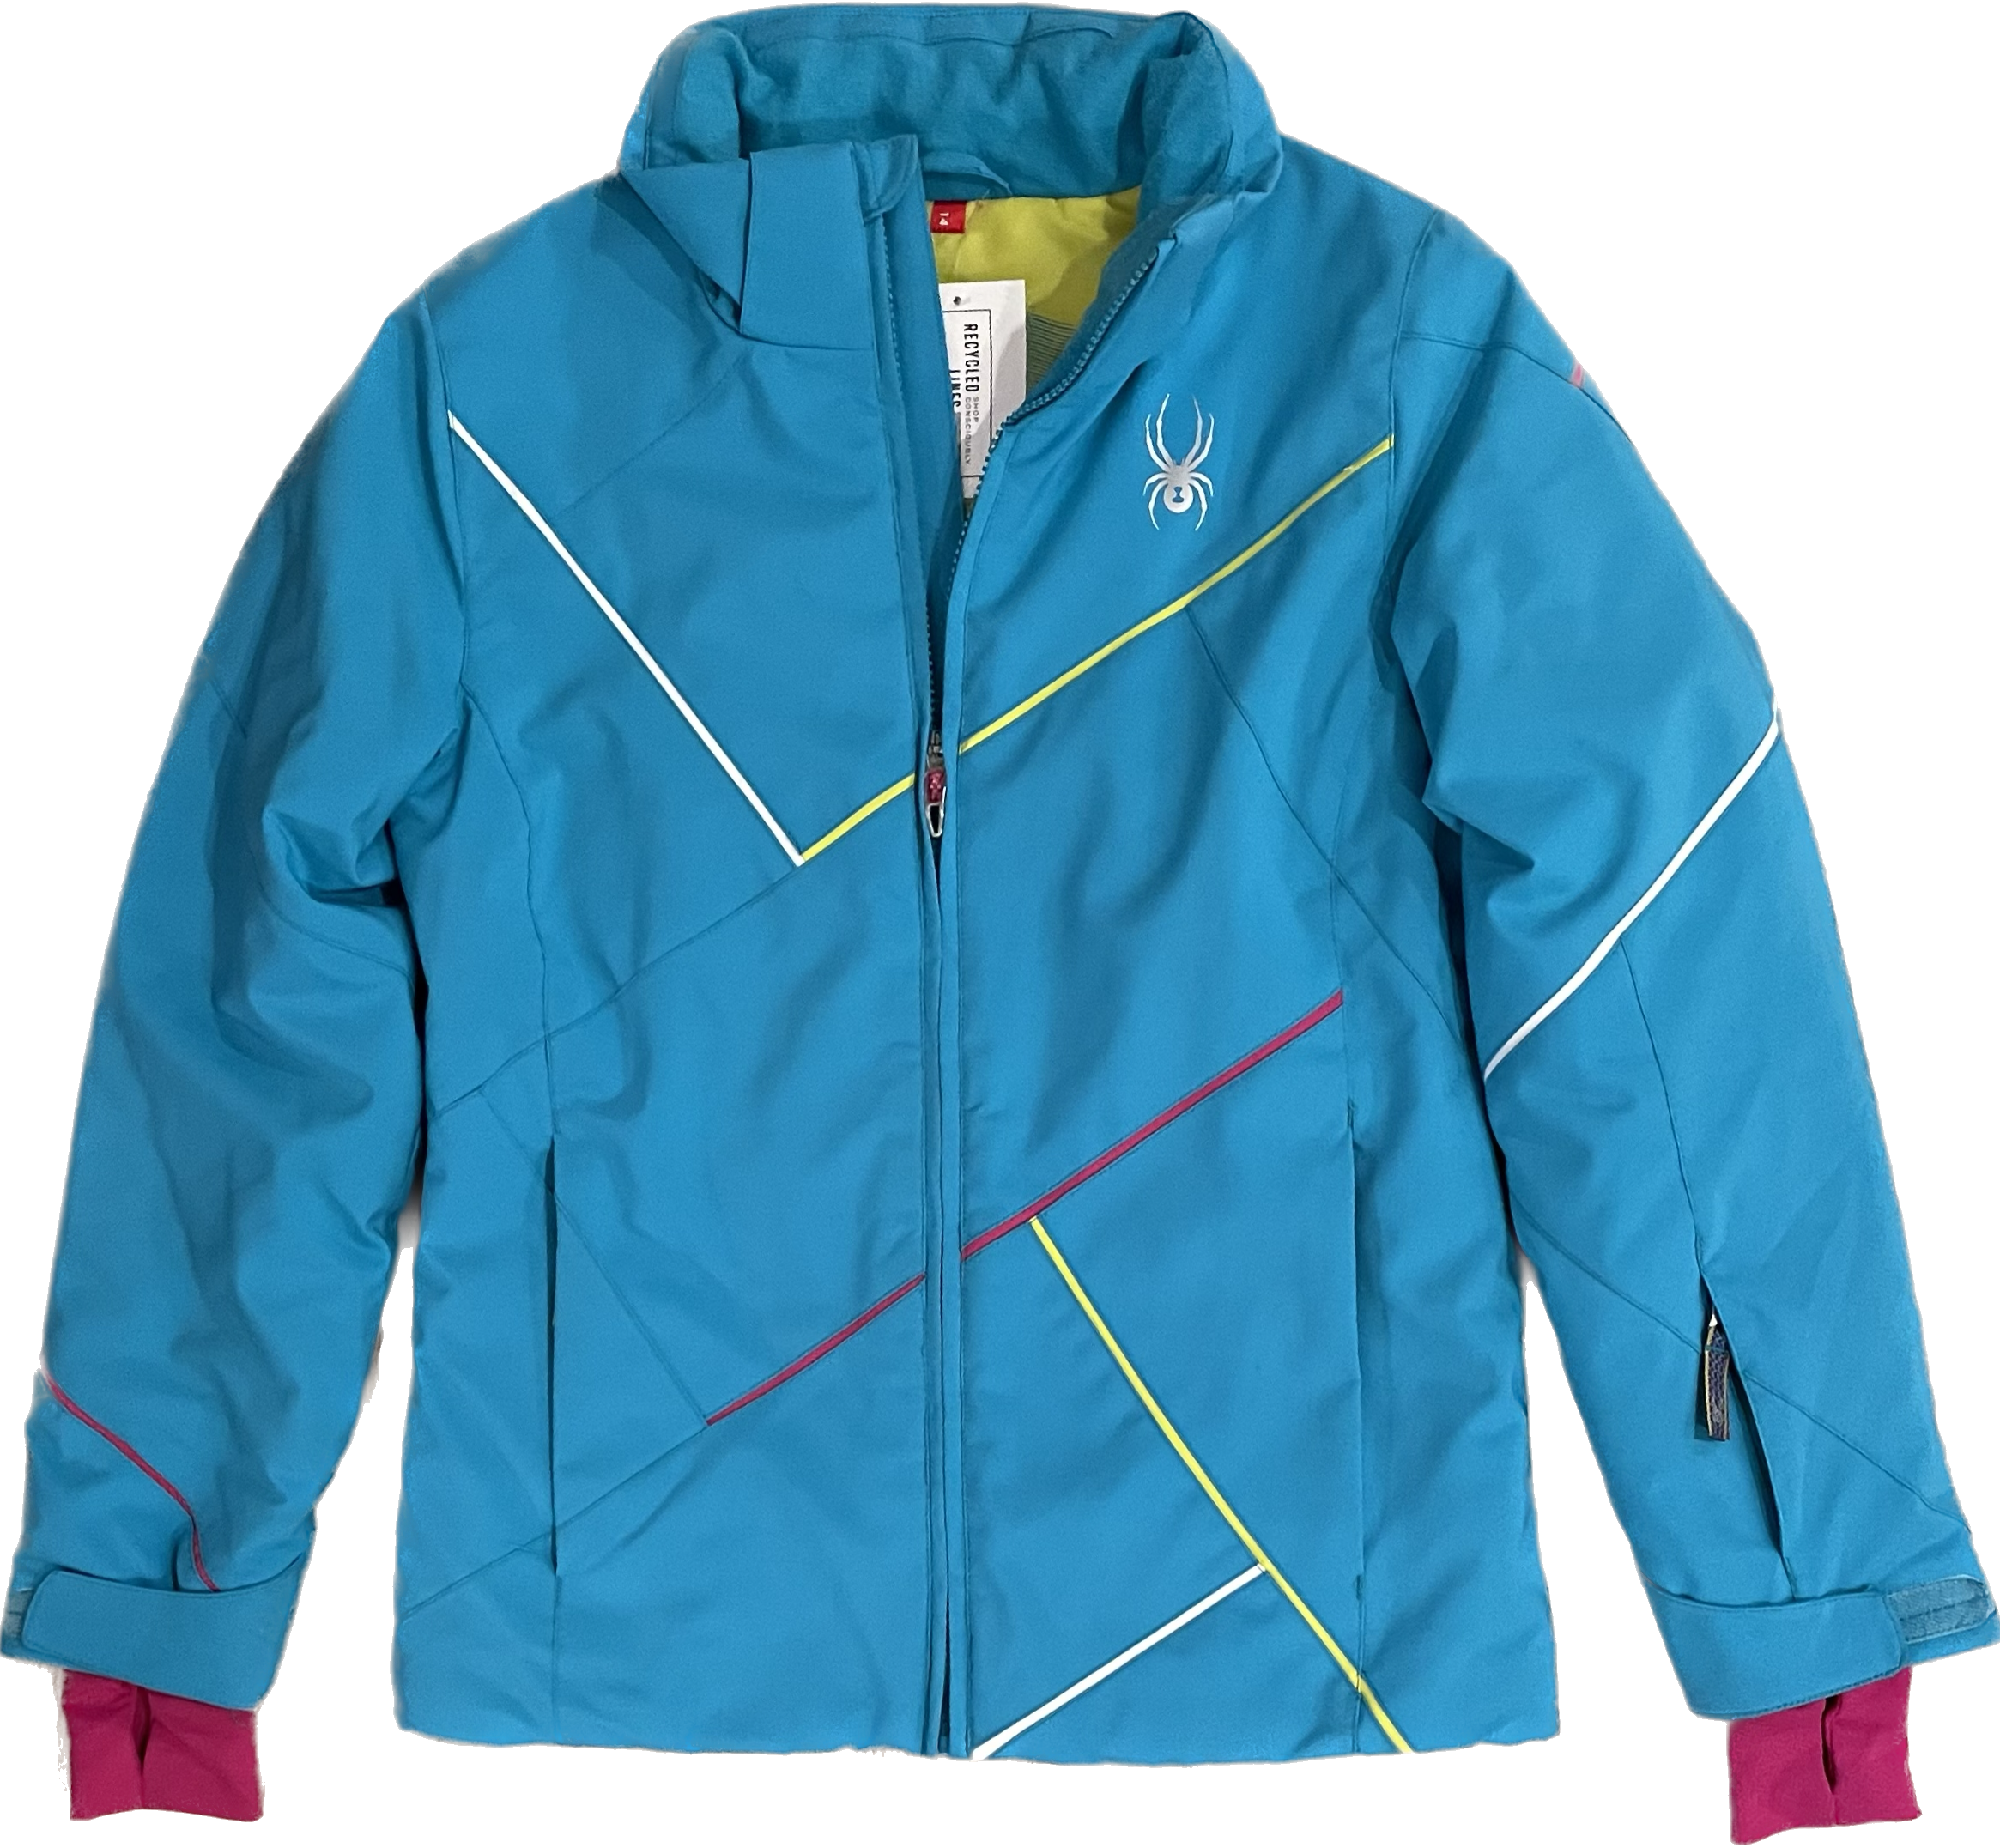 Spyder Ski/Snow Jacket, Teal Blue Girls Size 14